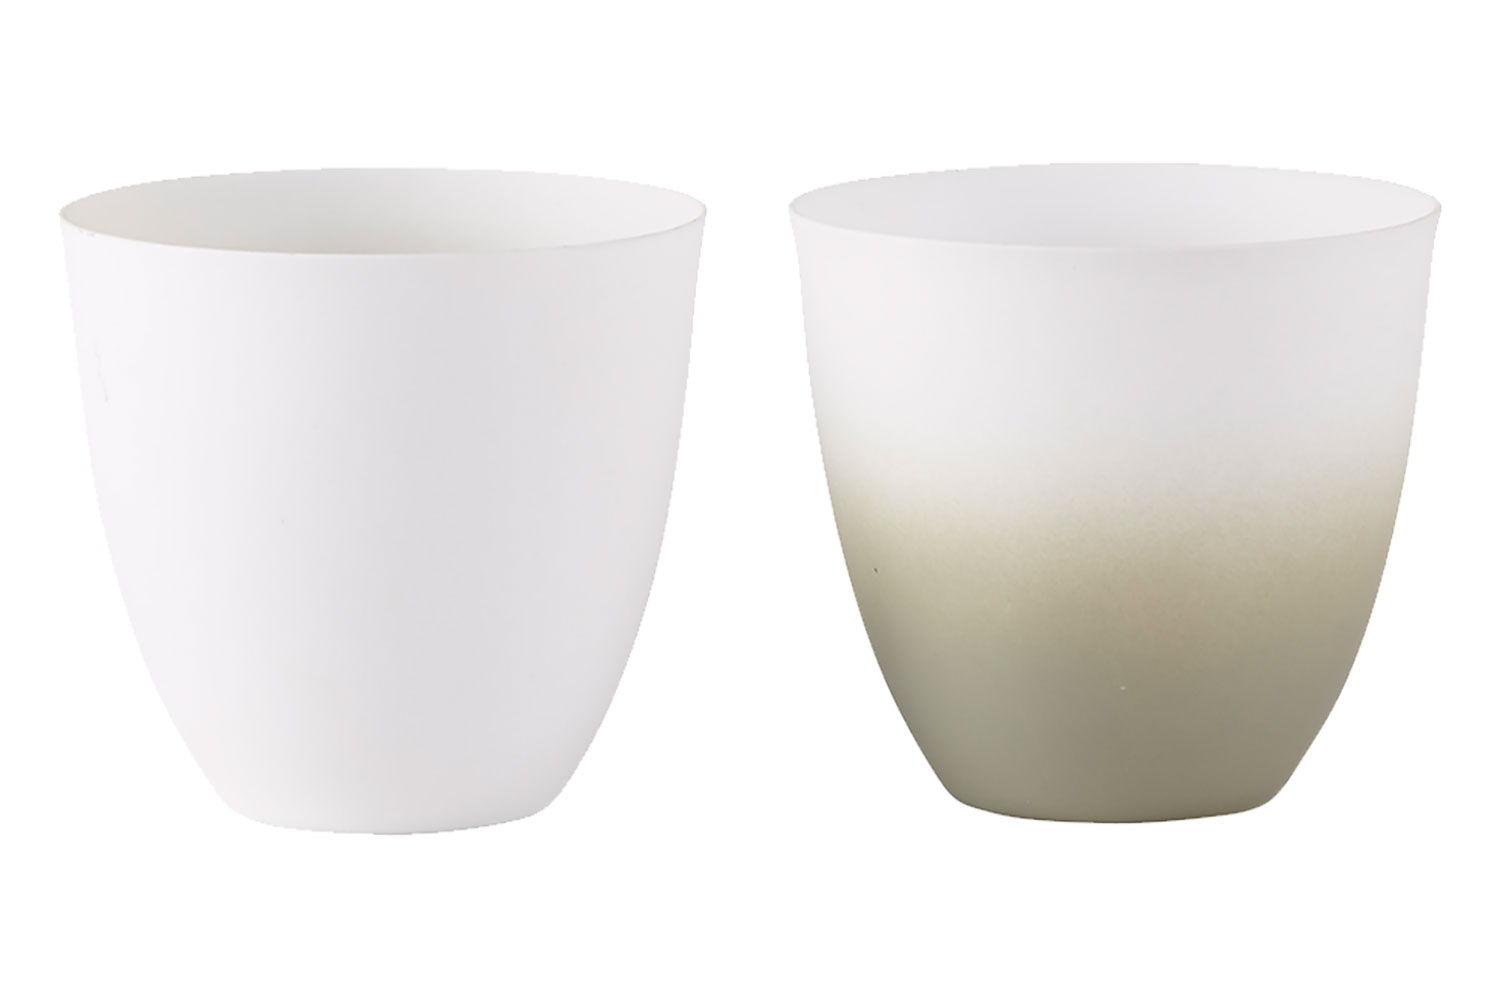 Decorative Cups